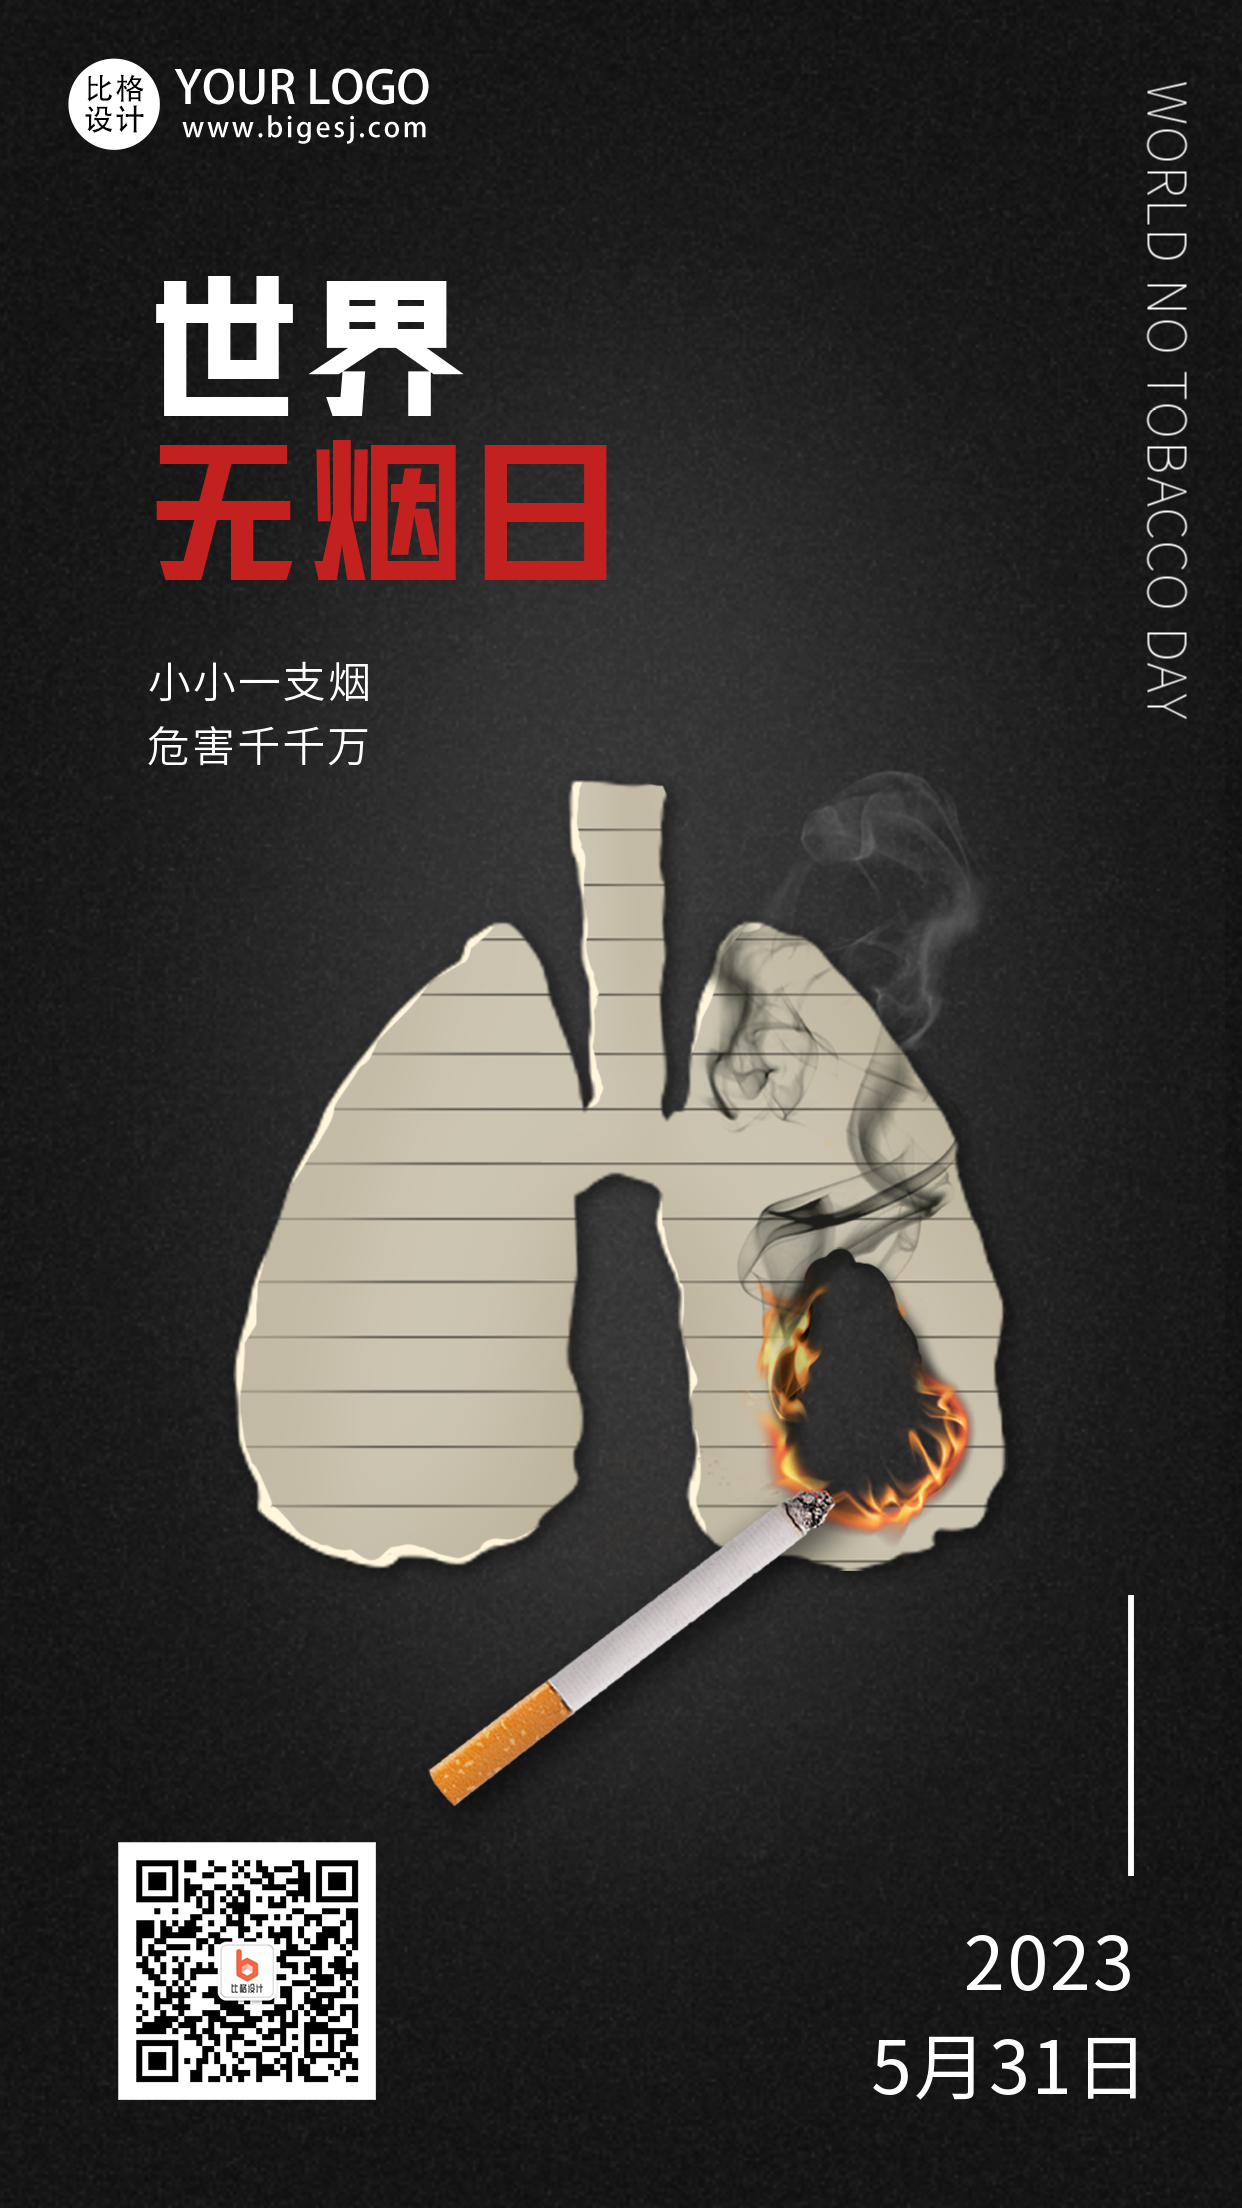 黑色世界无烟日宣传手机海报